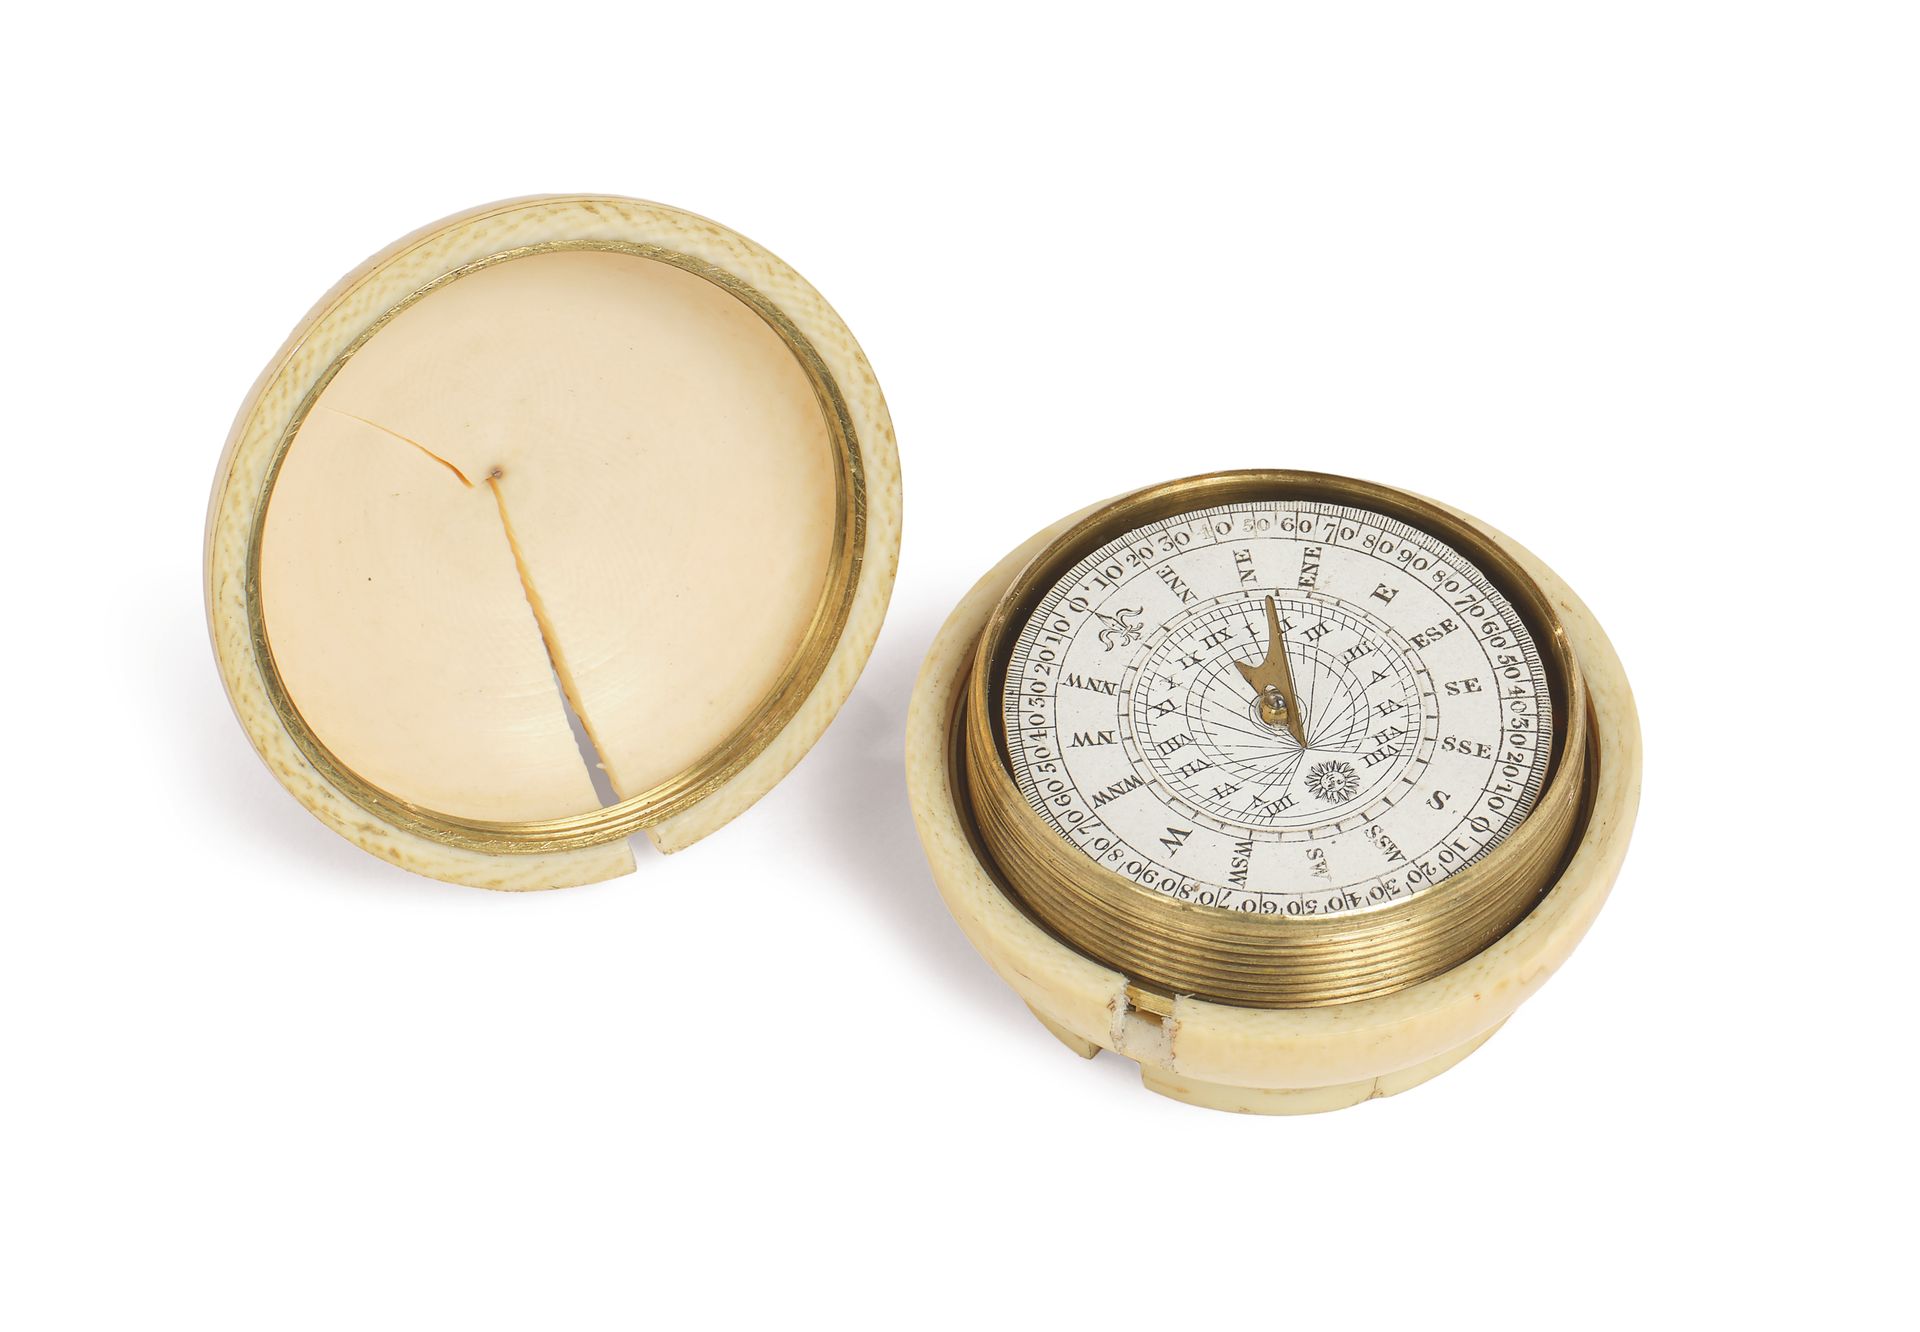 Null ~ 象牙罐头，打开后是一个日晷-罗盘。英国，19世纪。
直径：4.3厘米 (损坏和裂缝)